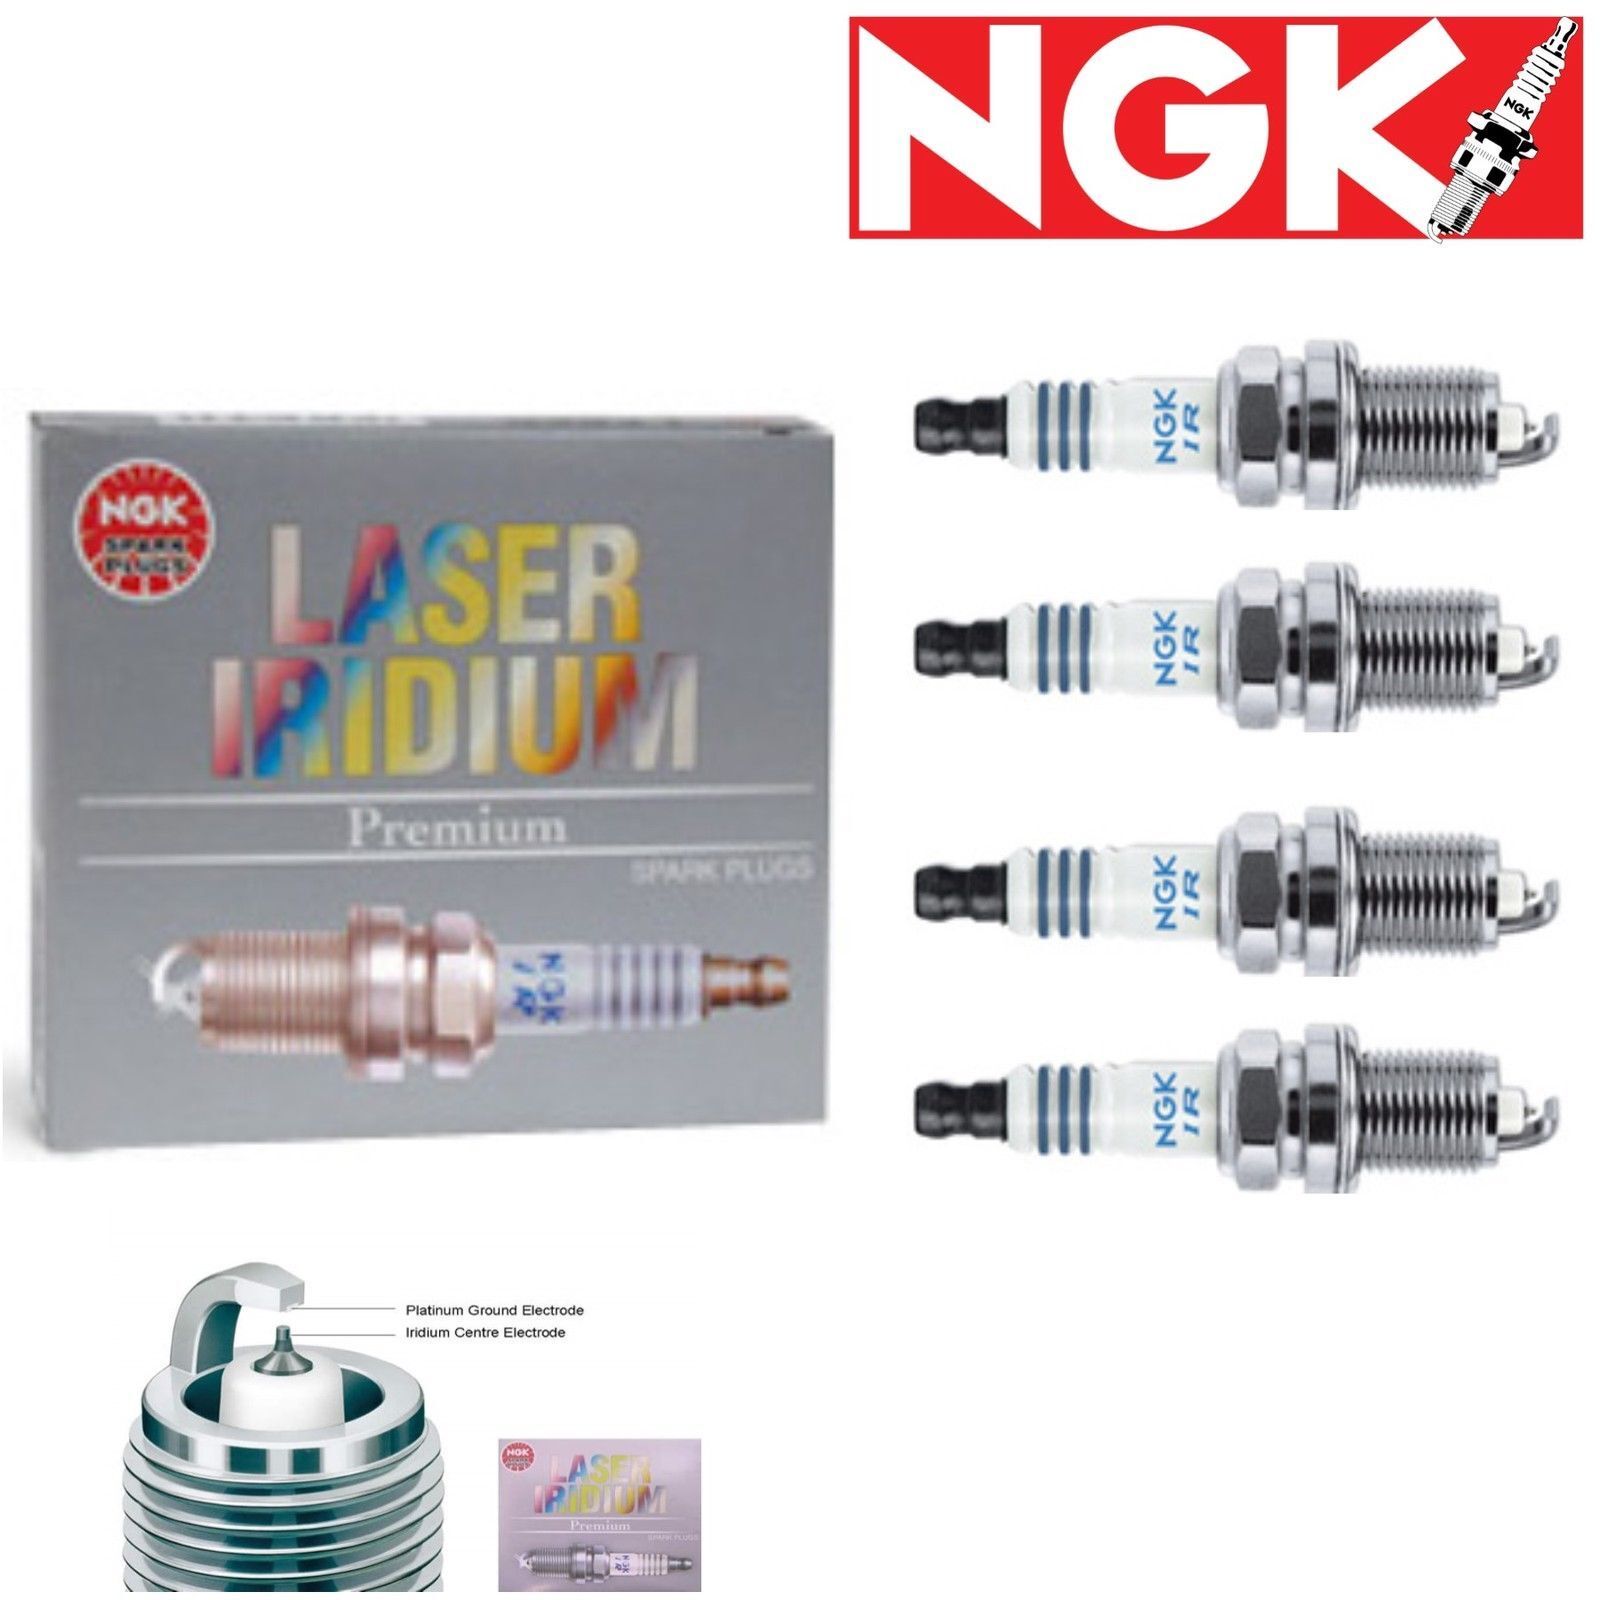 4 pcs NGK Laser Iridium Spark Plugs 2009-2010 Chevrolet Aveo 1.6L L4 Kit